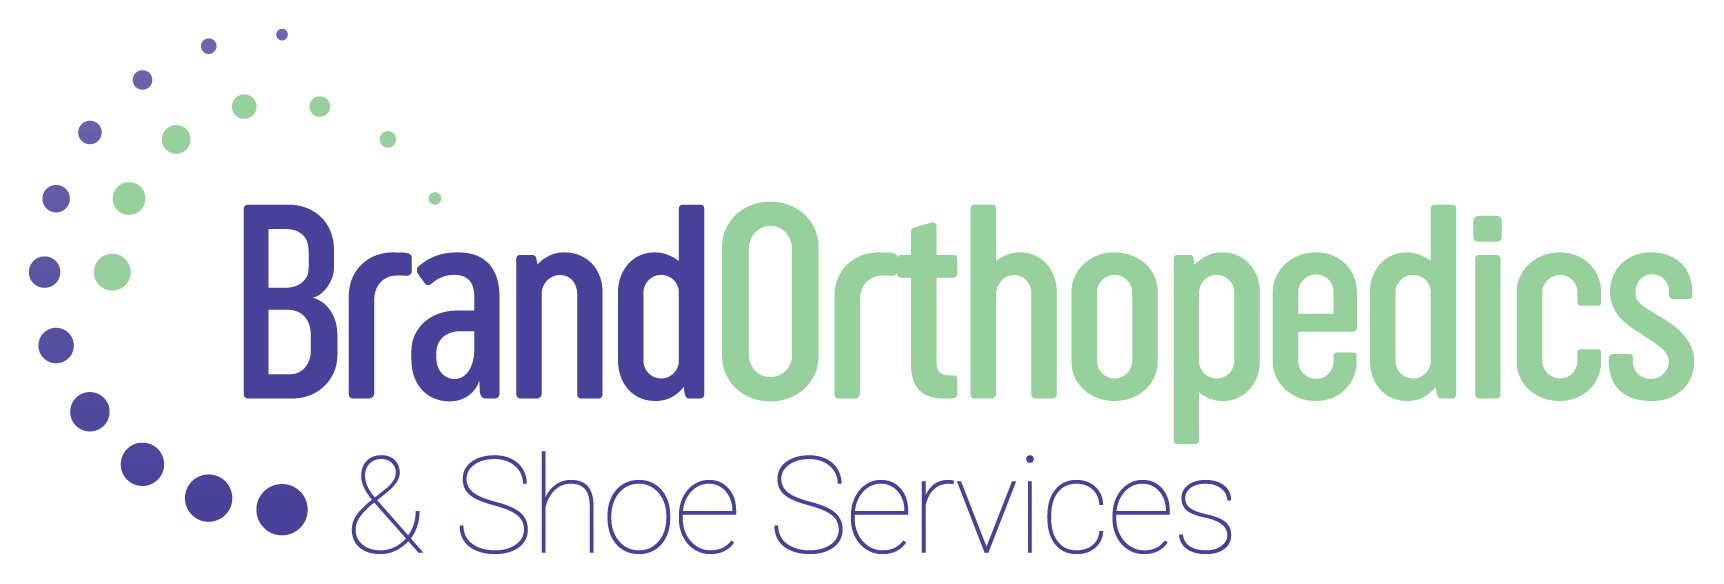 Brand Orthopedics logo